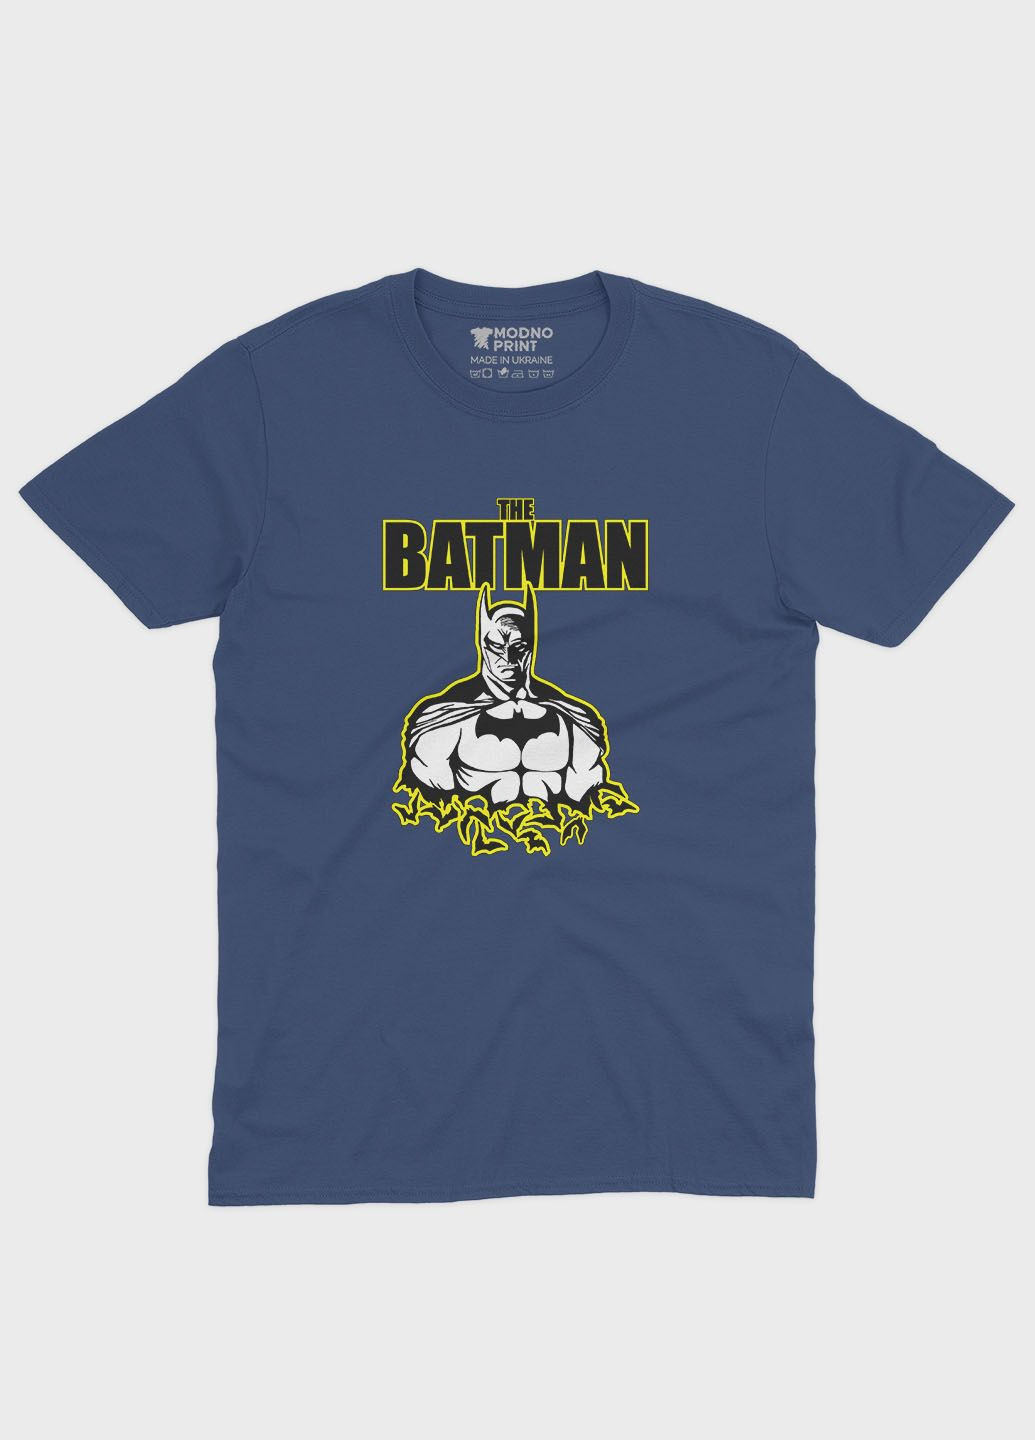 Темно-синяя демисезонная футболка для мальчика с принтом супергероя - бэтмен (ts001-1-nav-006-003-015-b) Modno